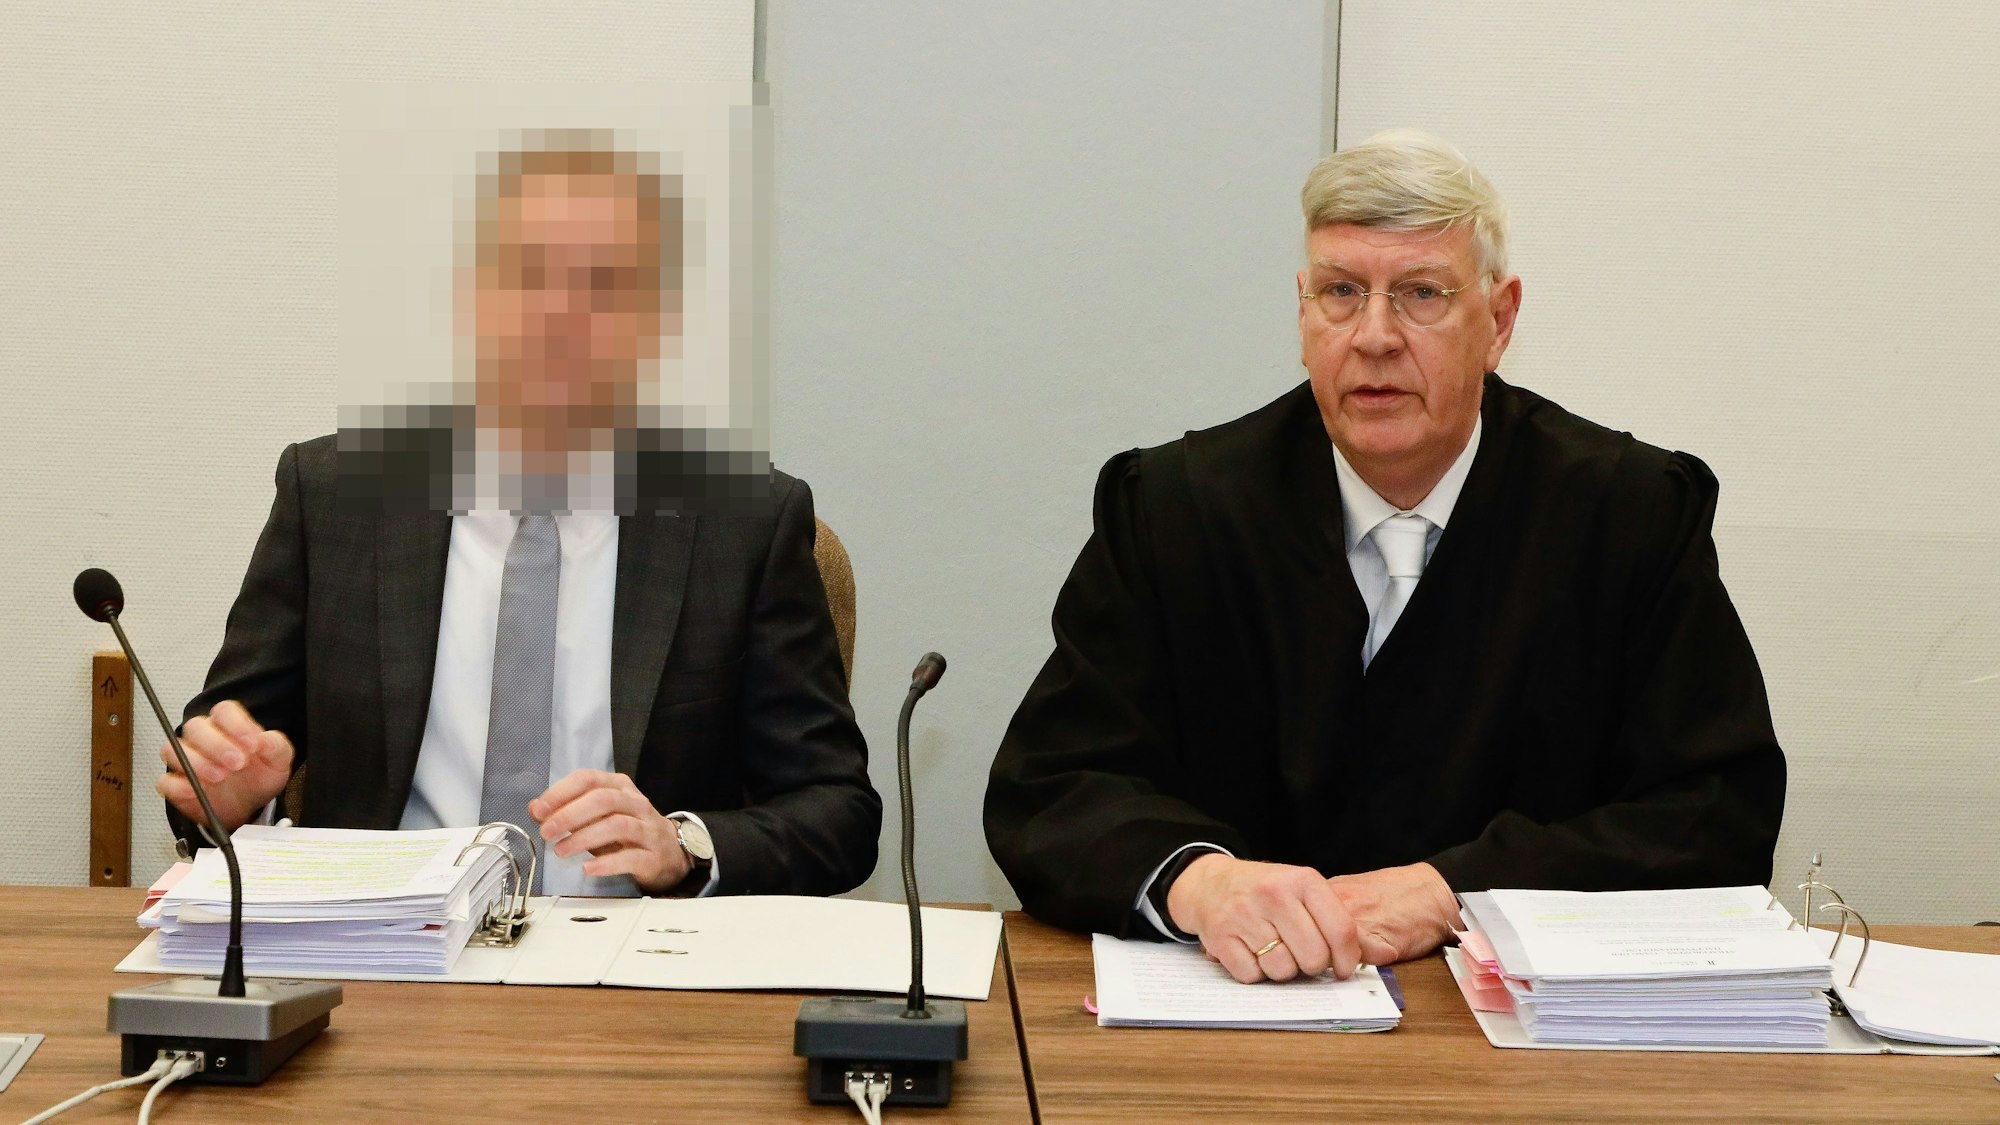 Ingo Wolf, Strafverteidiger des Angeklagten, war von 2005 bis 2010 Innenminister des Landes Nordrhein-Westfalen.